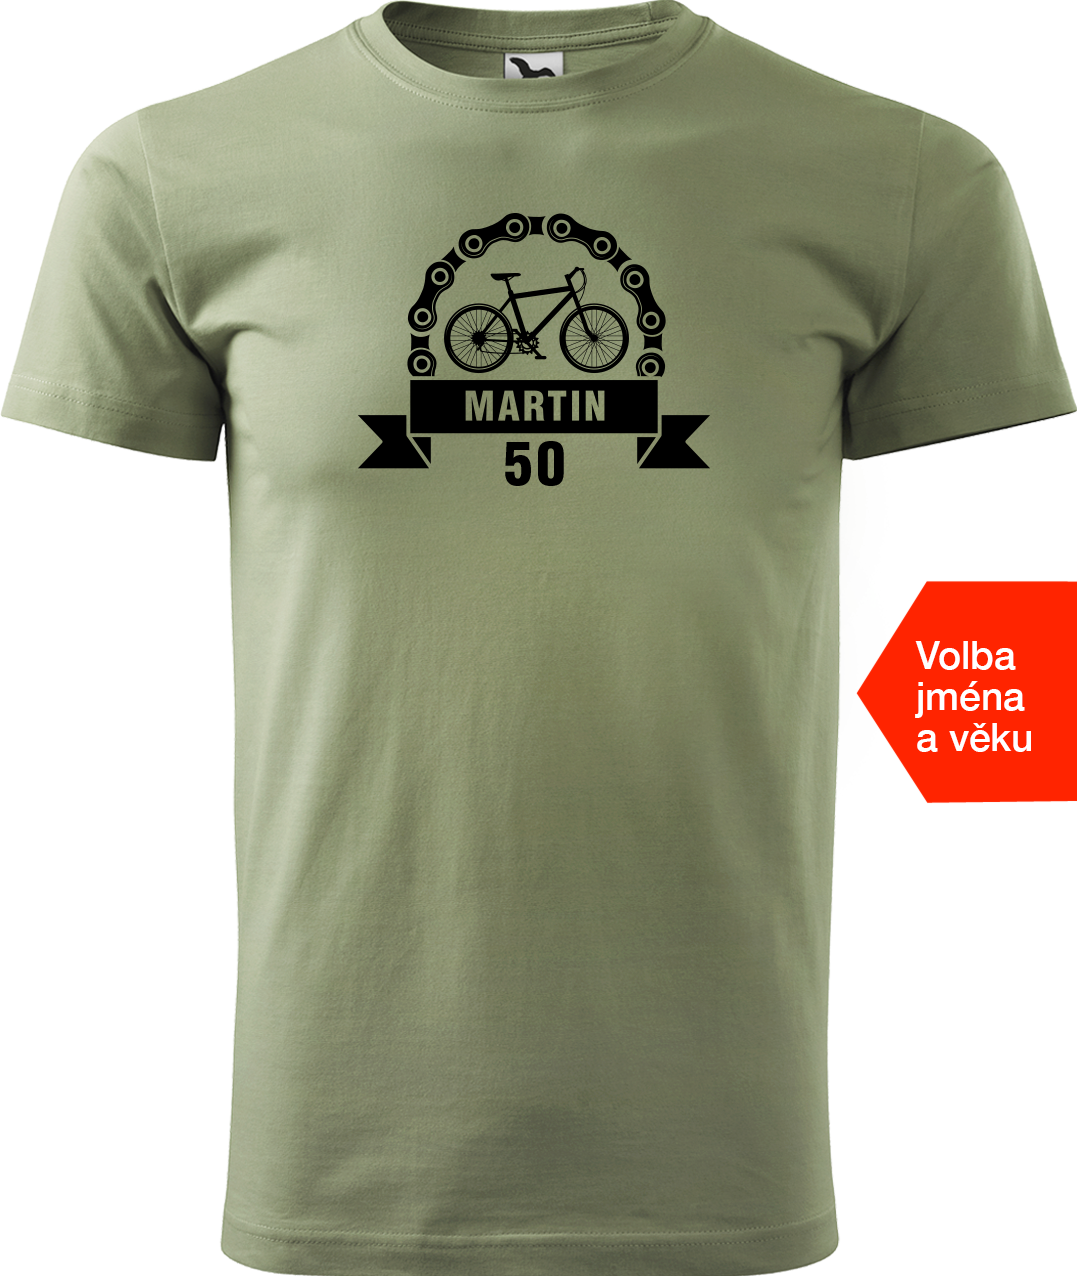 Pánské tričko pro cyklistu se jménem a věkem - Blahopřání Velikost: 2XL, Barva: Světlá khaki (28)